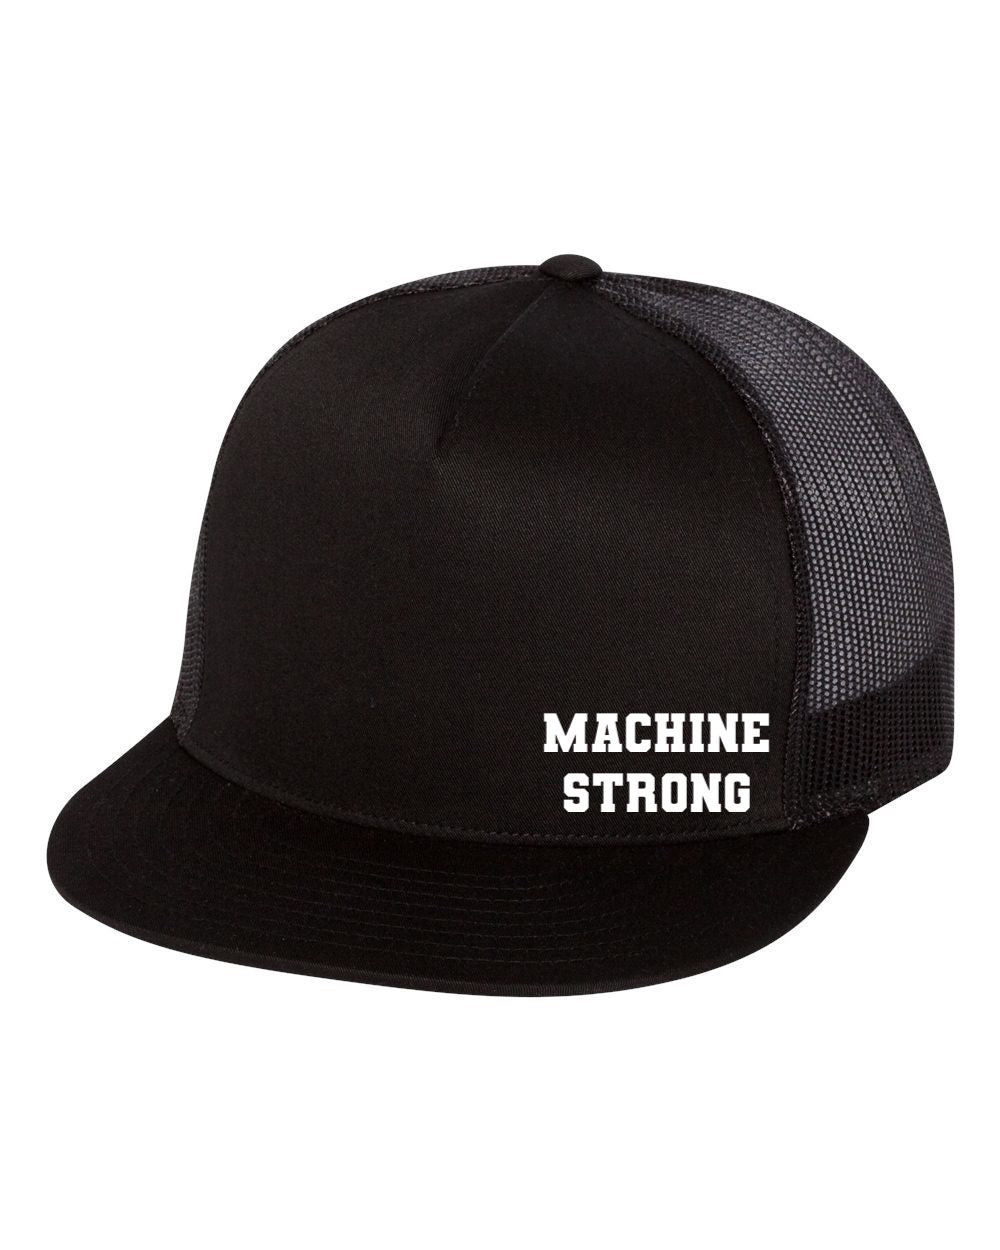 TEAM MACHINE TRUCKER HATS